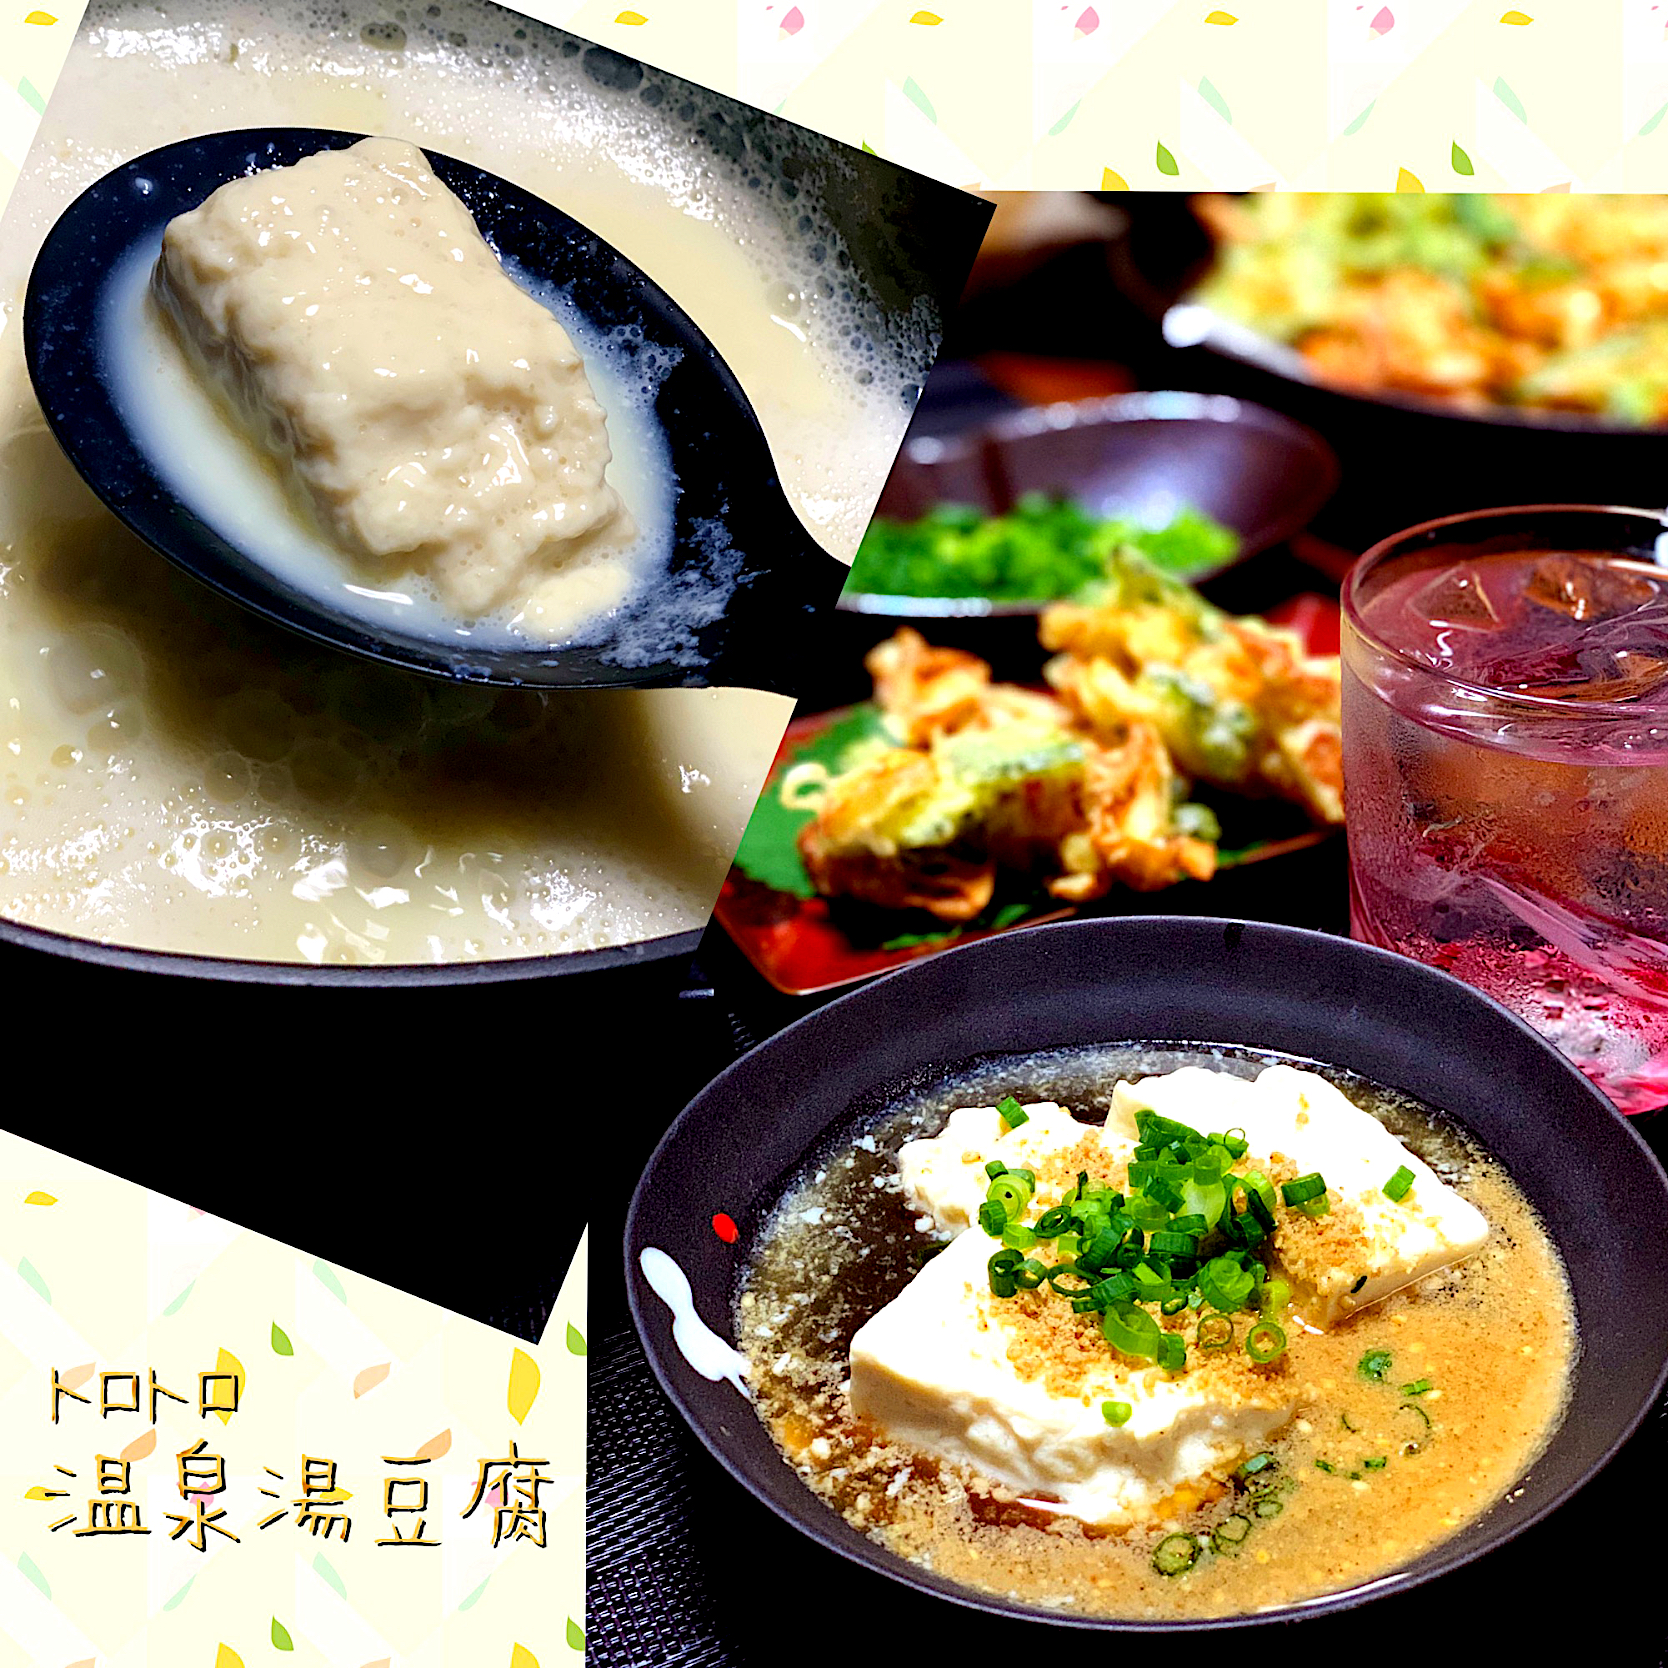 シロカのちょい鍋料理 No.3
嬉野「トロトロ温泉湯豆腐」✨